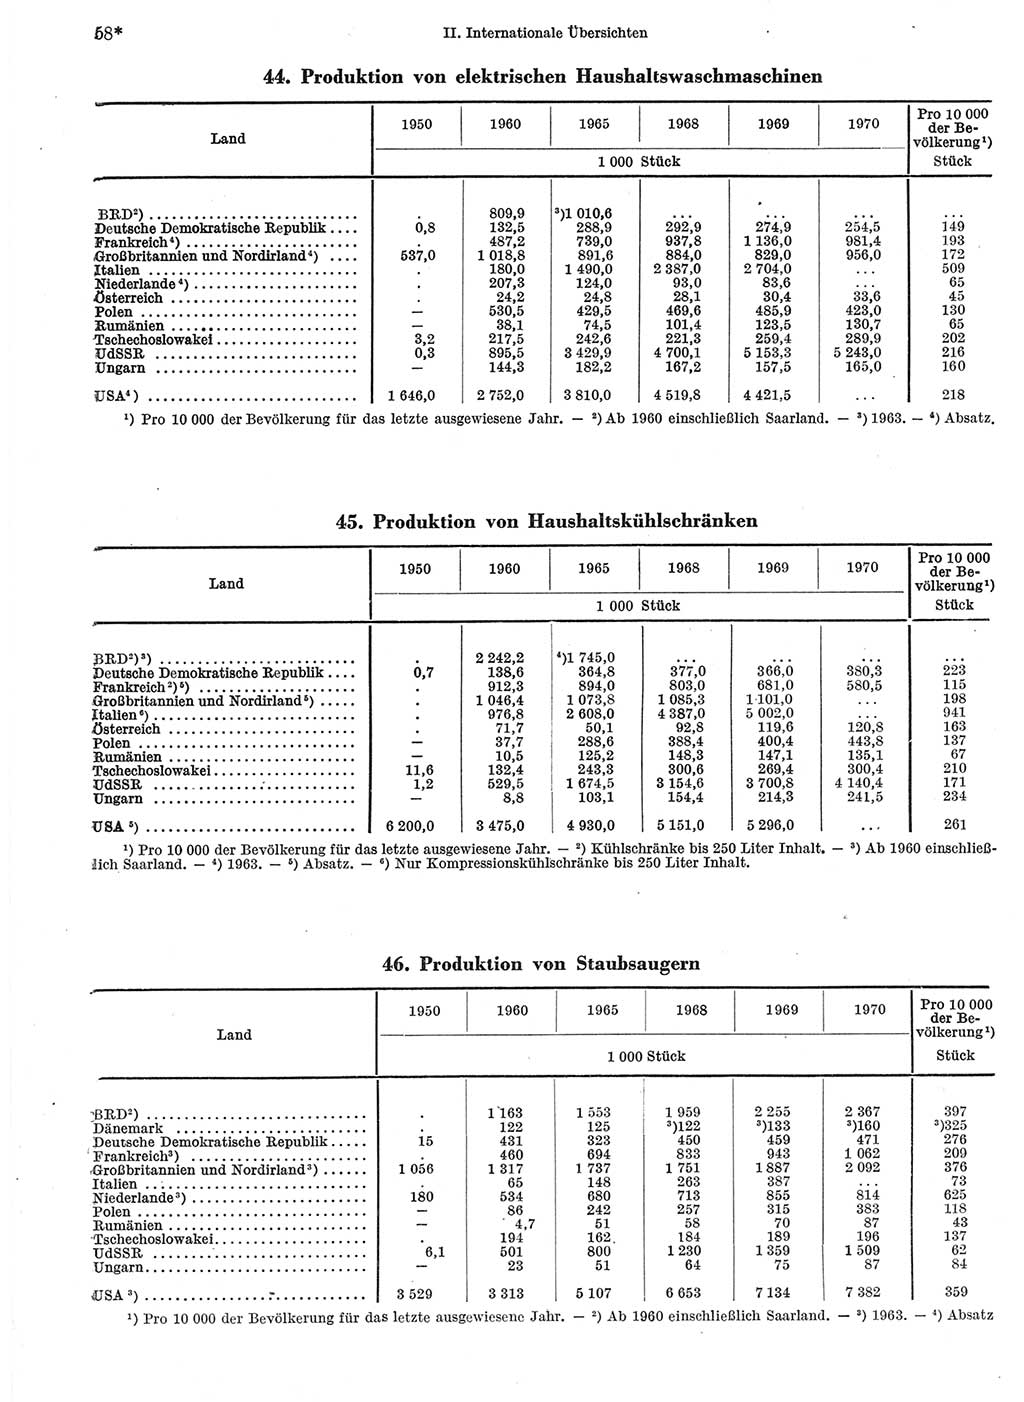 Statistisches Jahrbuch der Deutschen Demokratischen Republik (DDR) 1972, Seite 58 (Stat. Jb. DDR 1972, S. 58)